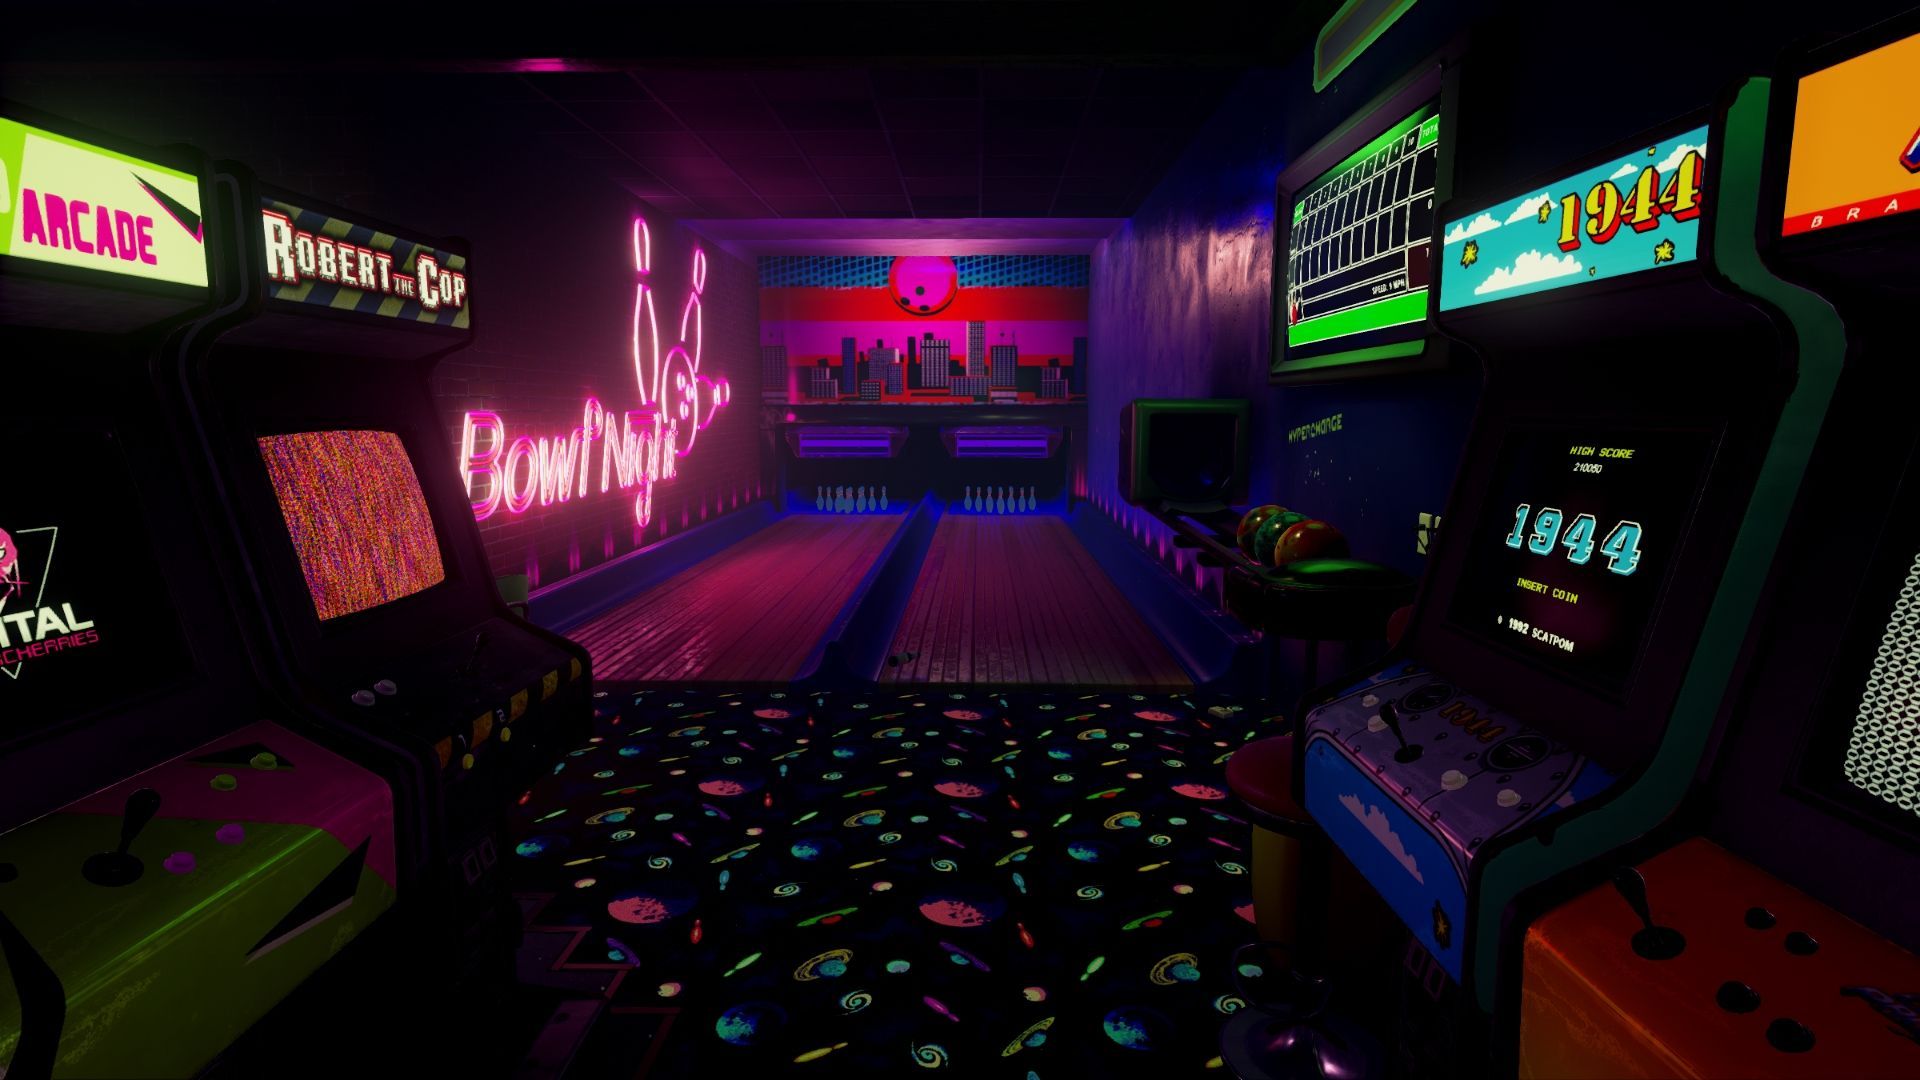 New Retro Arcade Neon 5. Room wallpaper designs, Arcade, Room wallpaper